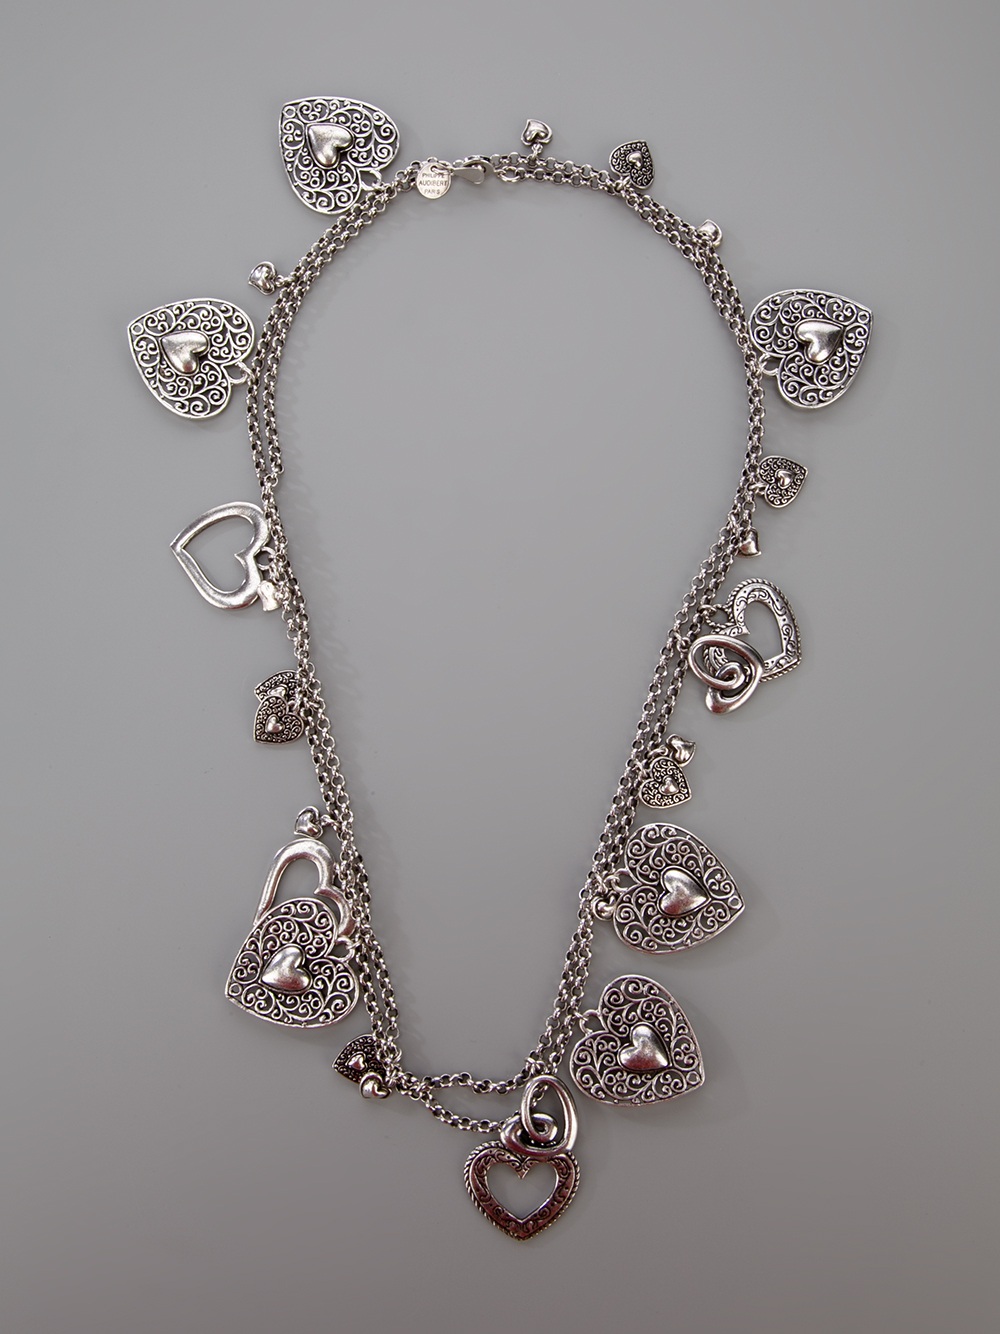 Philippe audibert Suzan Silverplated Necklace in Metallic | Lyst